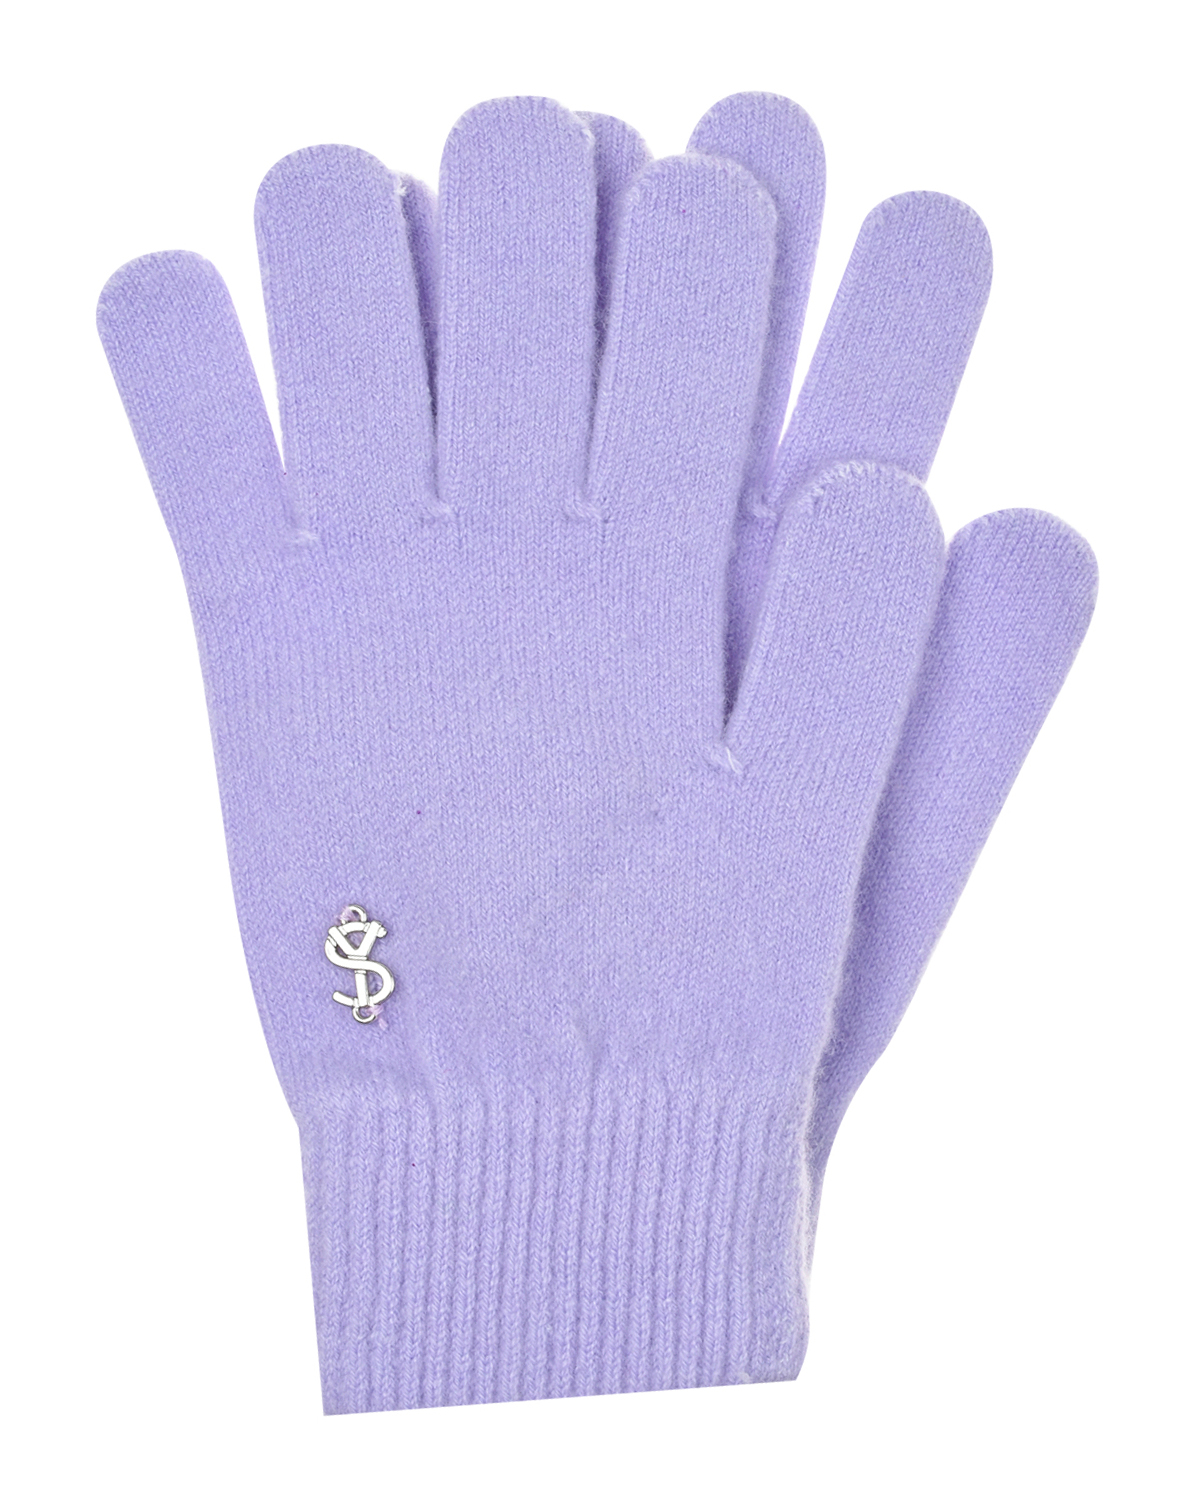 Сиреневые перчатки из шерсти и кашемира Yves Salomon, размер unica, цвет сиреневый - фото 1